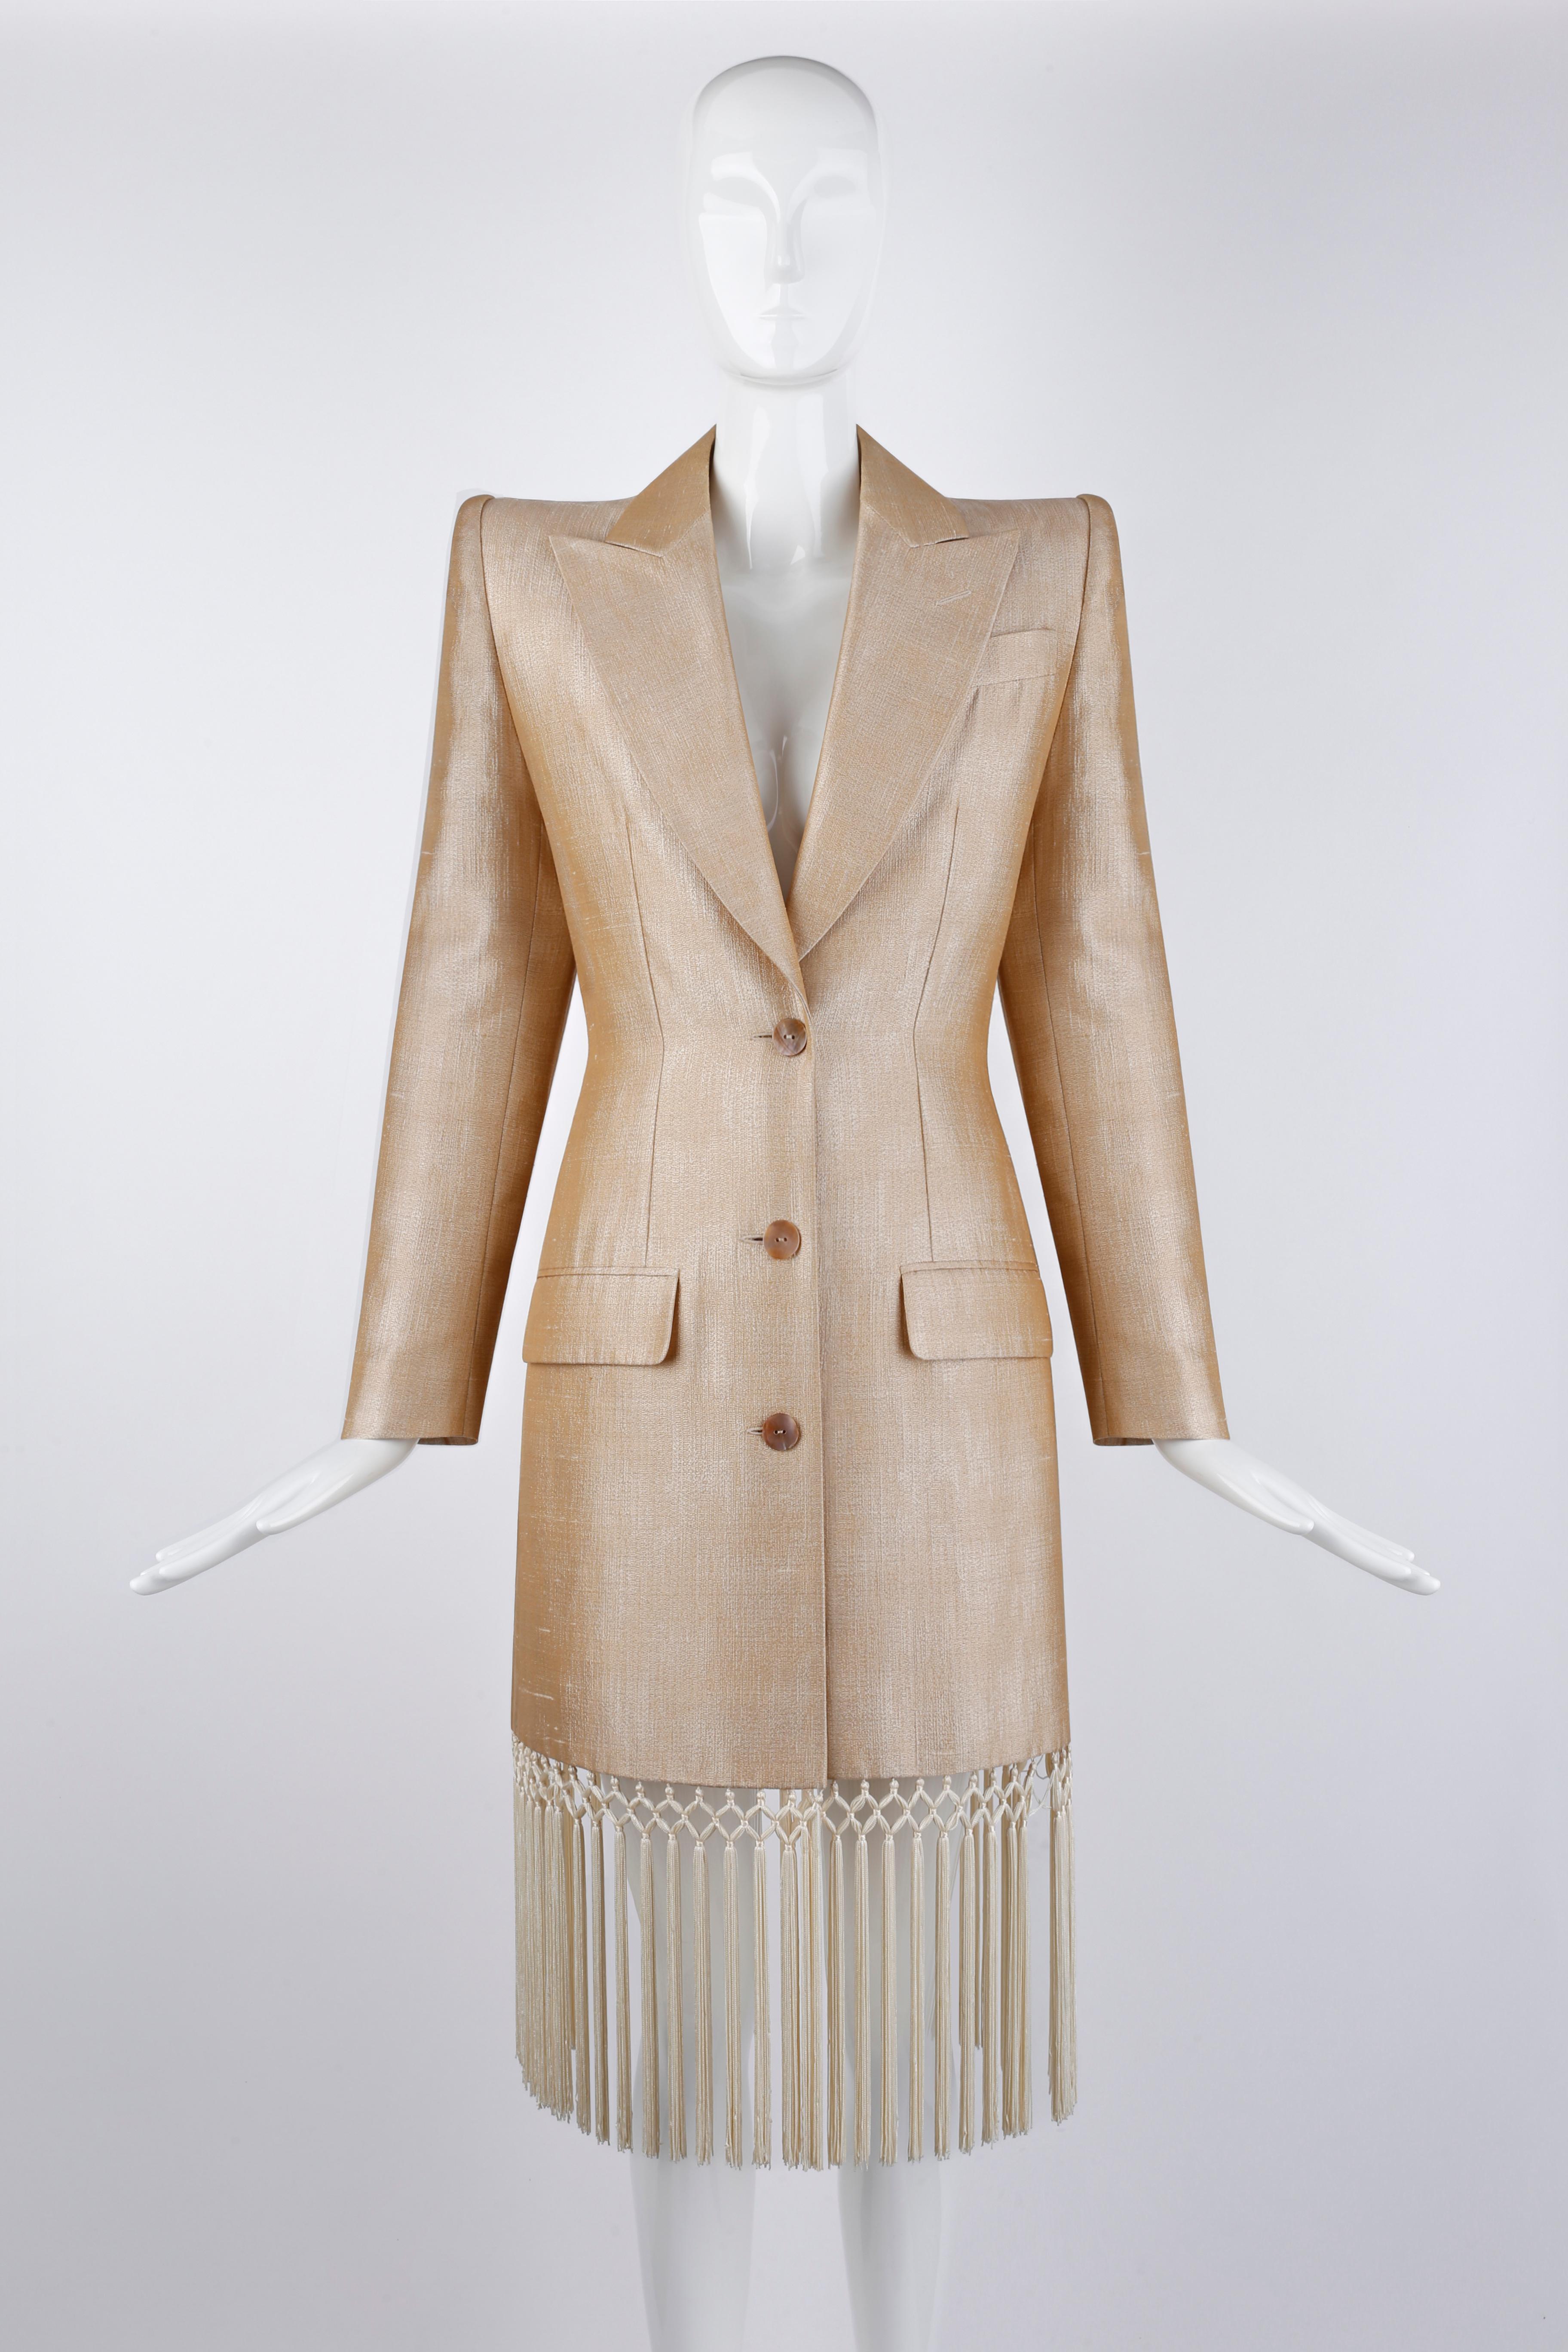 Entworfen von Alexander McQueen für die Givenchy Couture Frühjahr/Sommer 1998 Kollektion. Dieser seltene Mantel ist entlang des gesamten Saums mit zahlreichen Quasten verziert. Strukturierte Schultern und taillierte Passform. Das Material aus einer